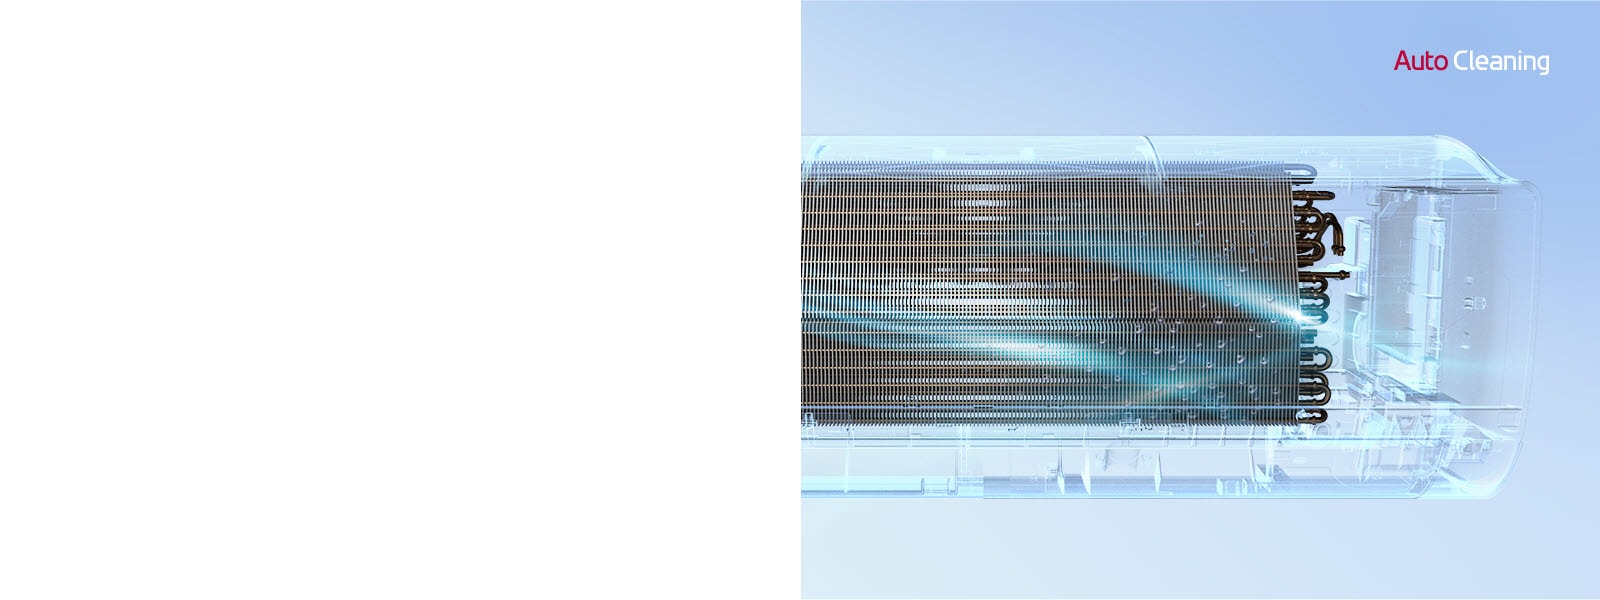 La vue de face du climatiseur LG avec l'extérieur complètement invisible afin que le fonctionnement interne de la machine soit visible.  La machine fonctionne, puis une lumière bleue, le mécanisme de nettoyage automatique, s'allume et lave toute la machine avec une lumière bleue.  Le logo AutoCleaning se trouve dans le coin supérieur droit.